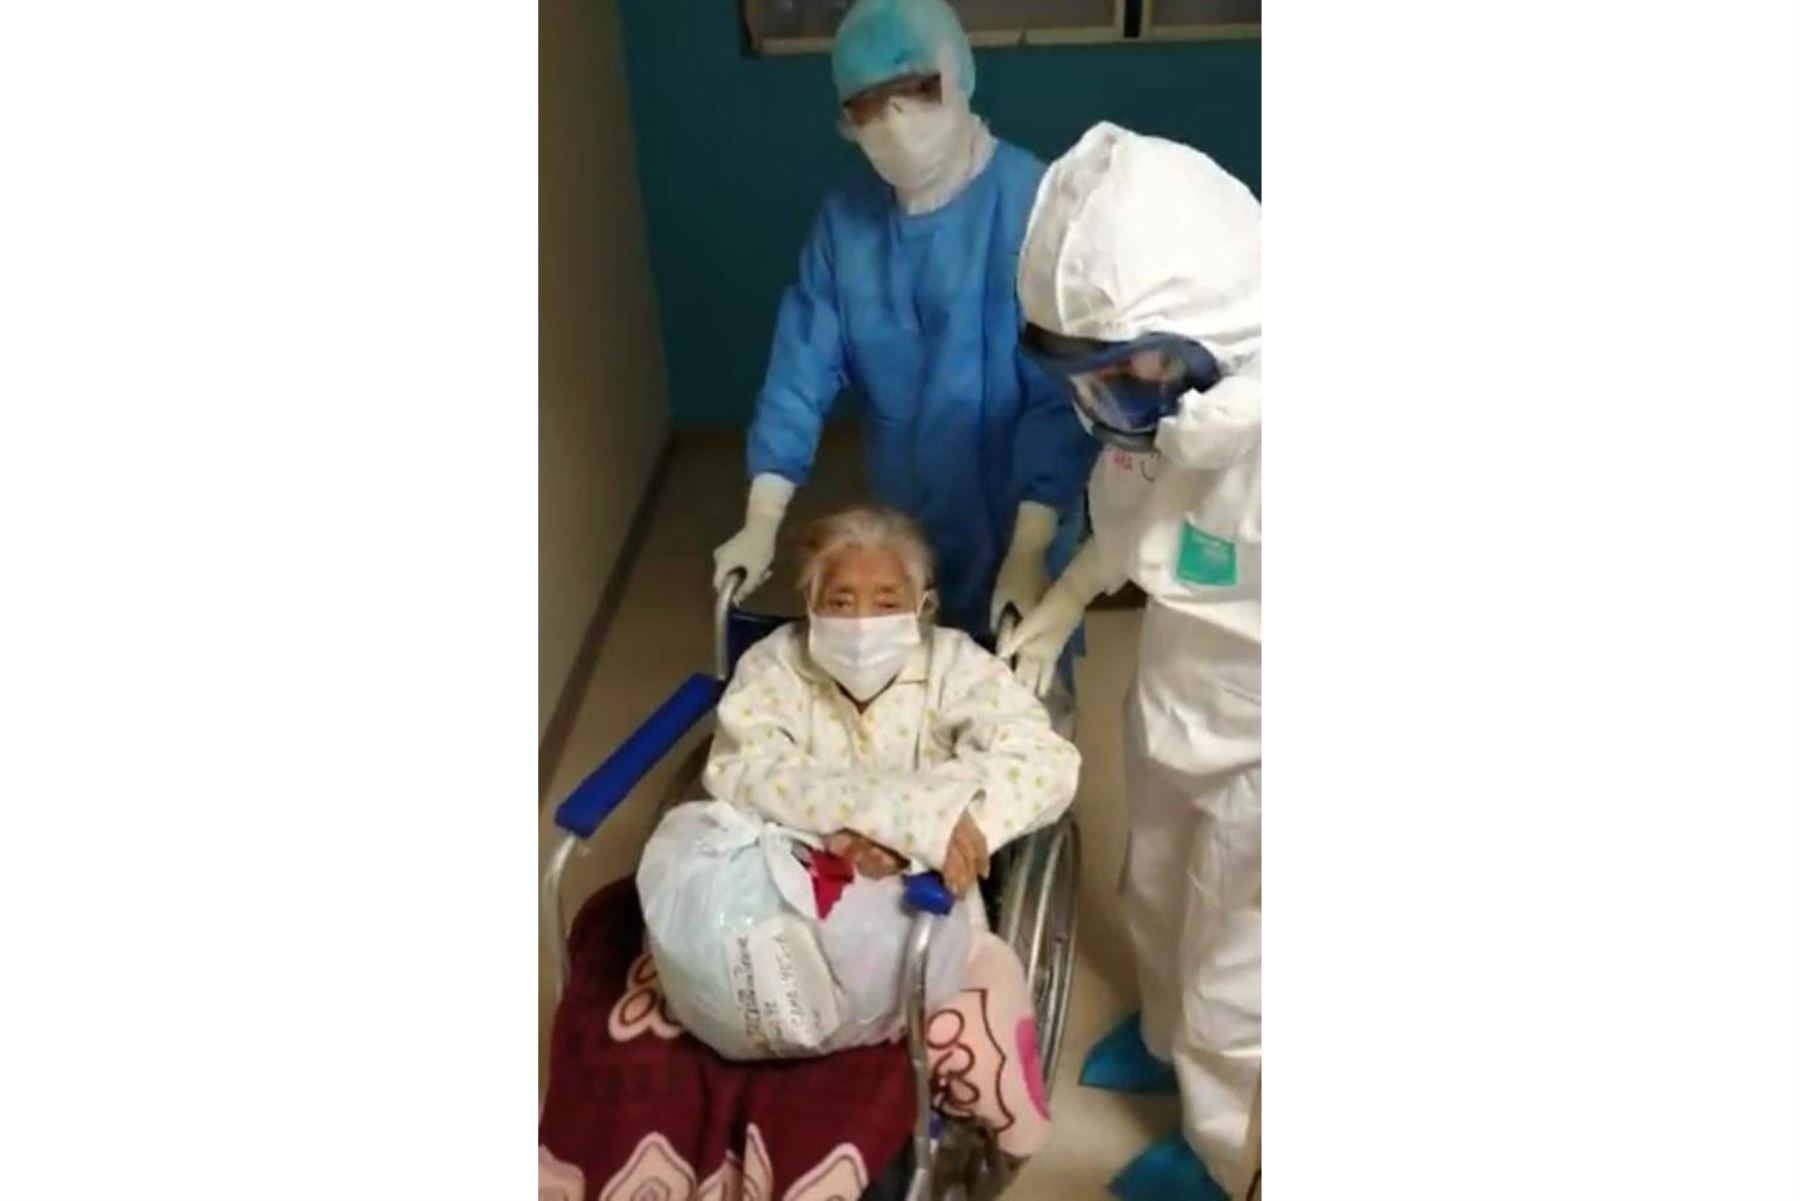 La paciente estuvo cinco días en estado crítico. Poco a poco requería menos oxígeno hasta que se le retiró del todo y se le dio de alta. Foto: ANDINA/Difusión